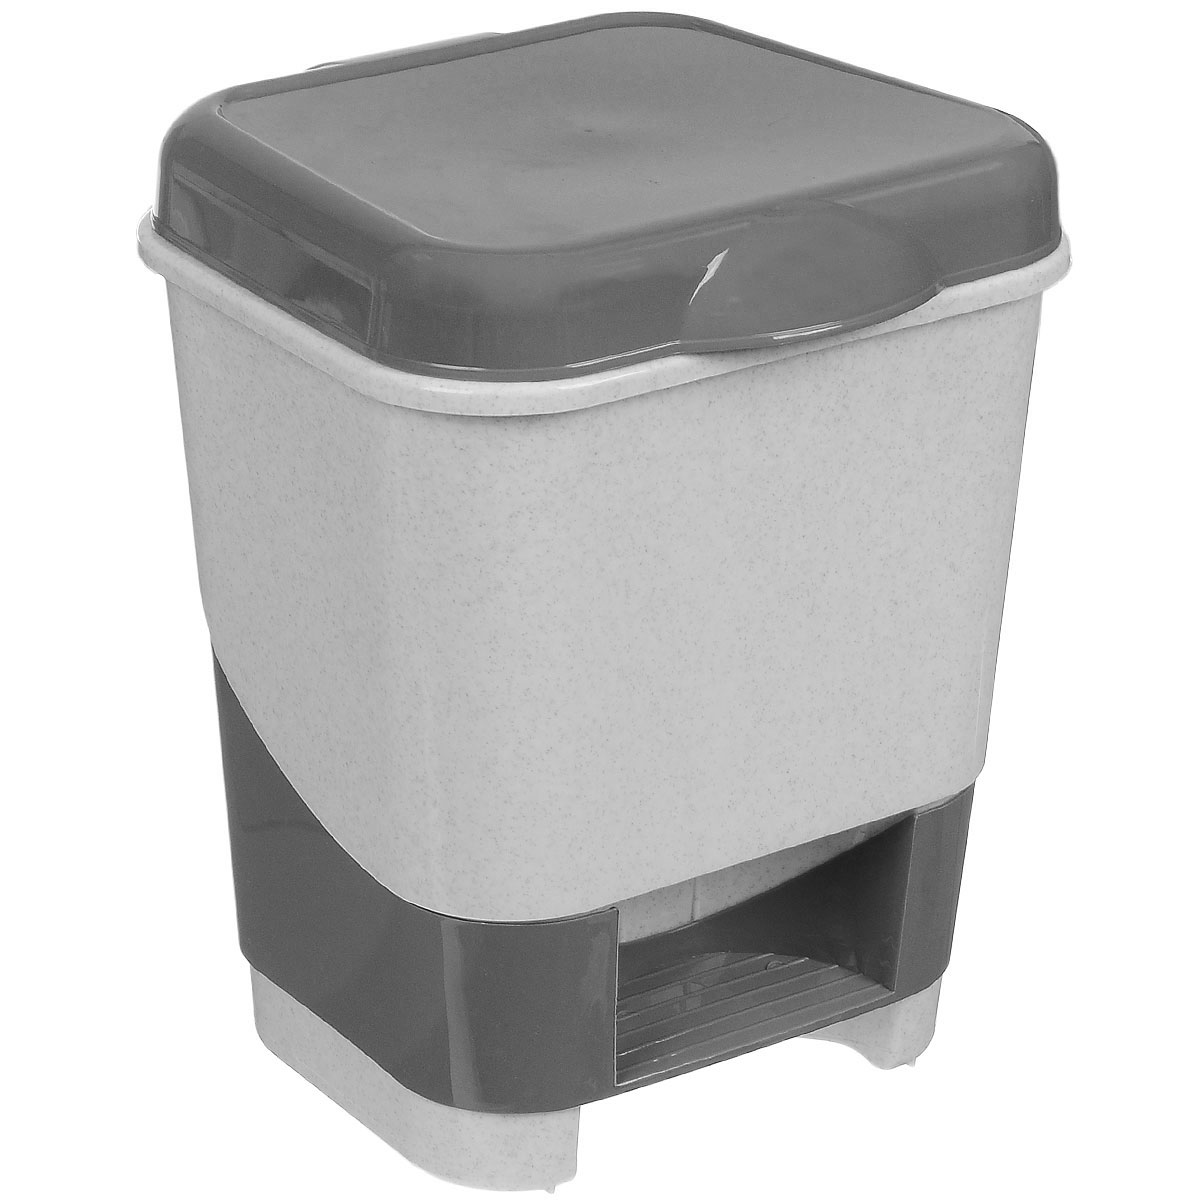 фото Контейнер для мусора "Полимербыт", с педалью, цвет: серый, белый, 8 л